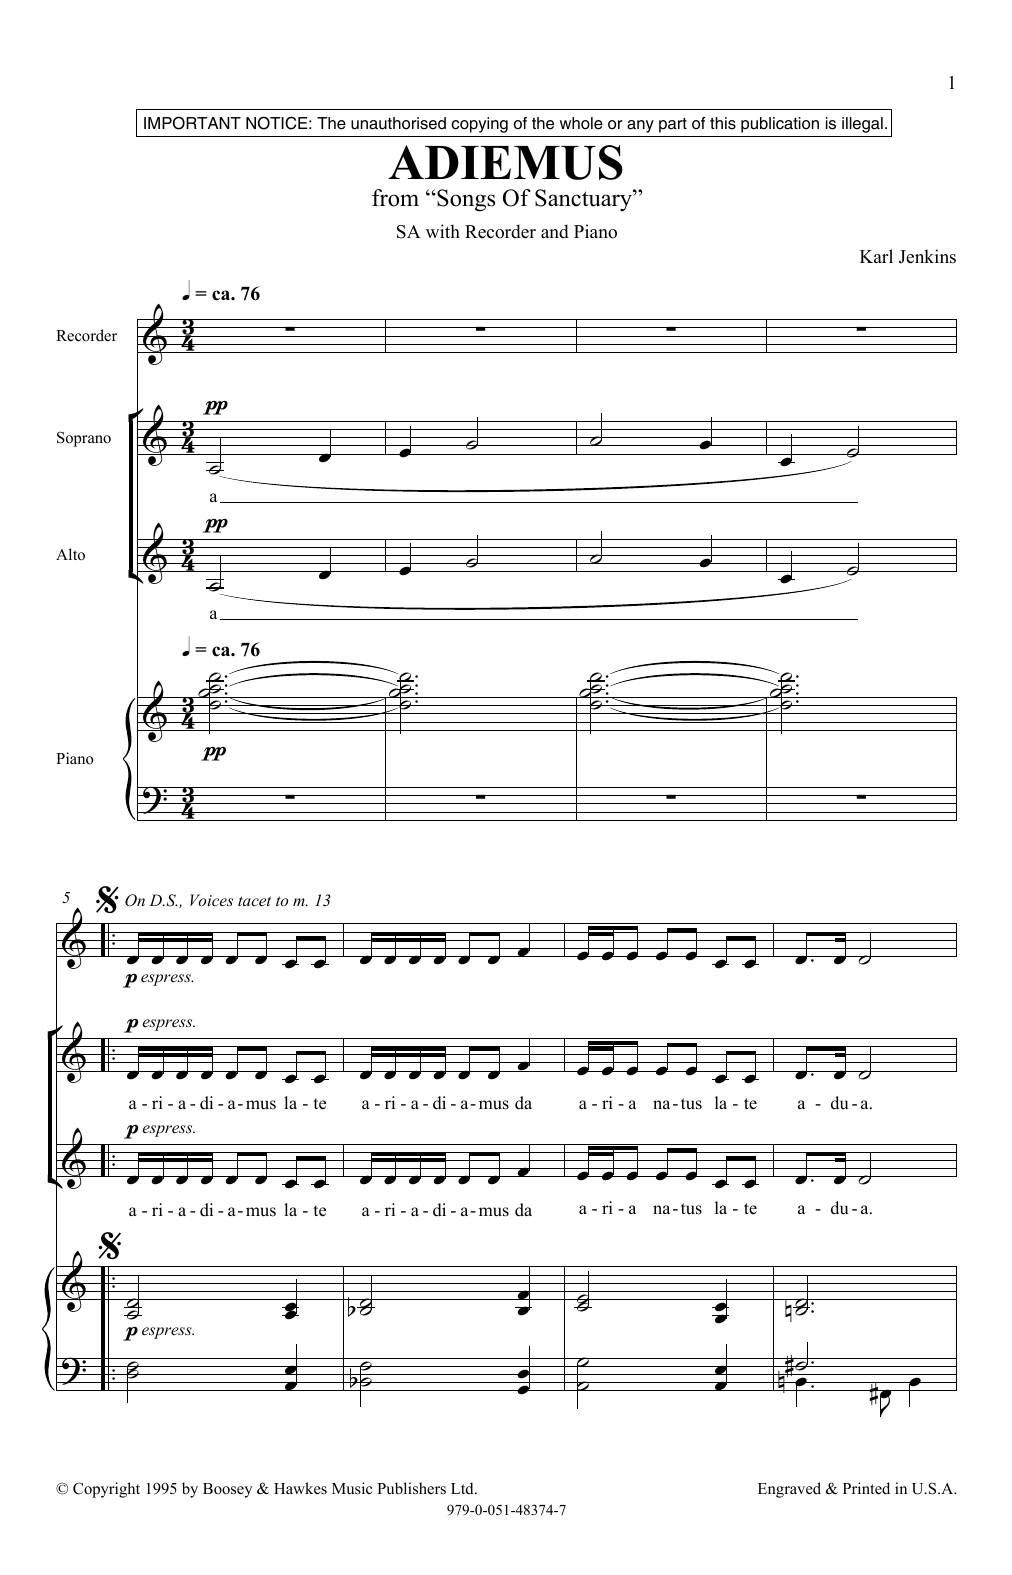 Karl Jenkins Adiemus Sheet Music Notes & Chords for 2-Part Choir - Download or Print PDF